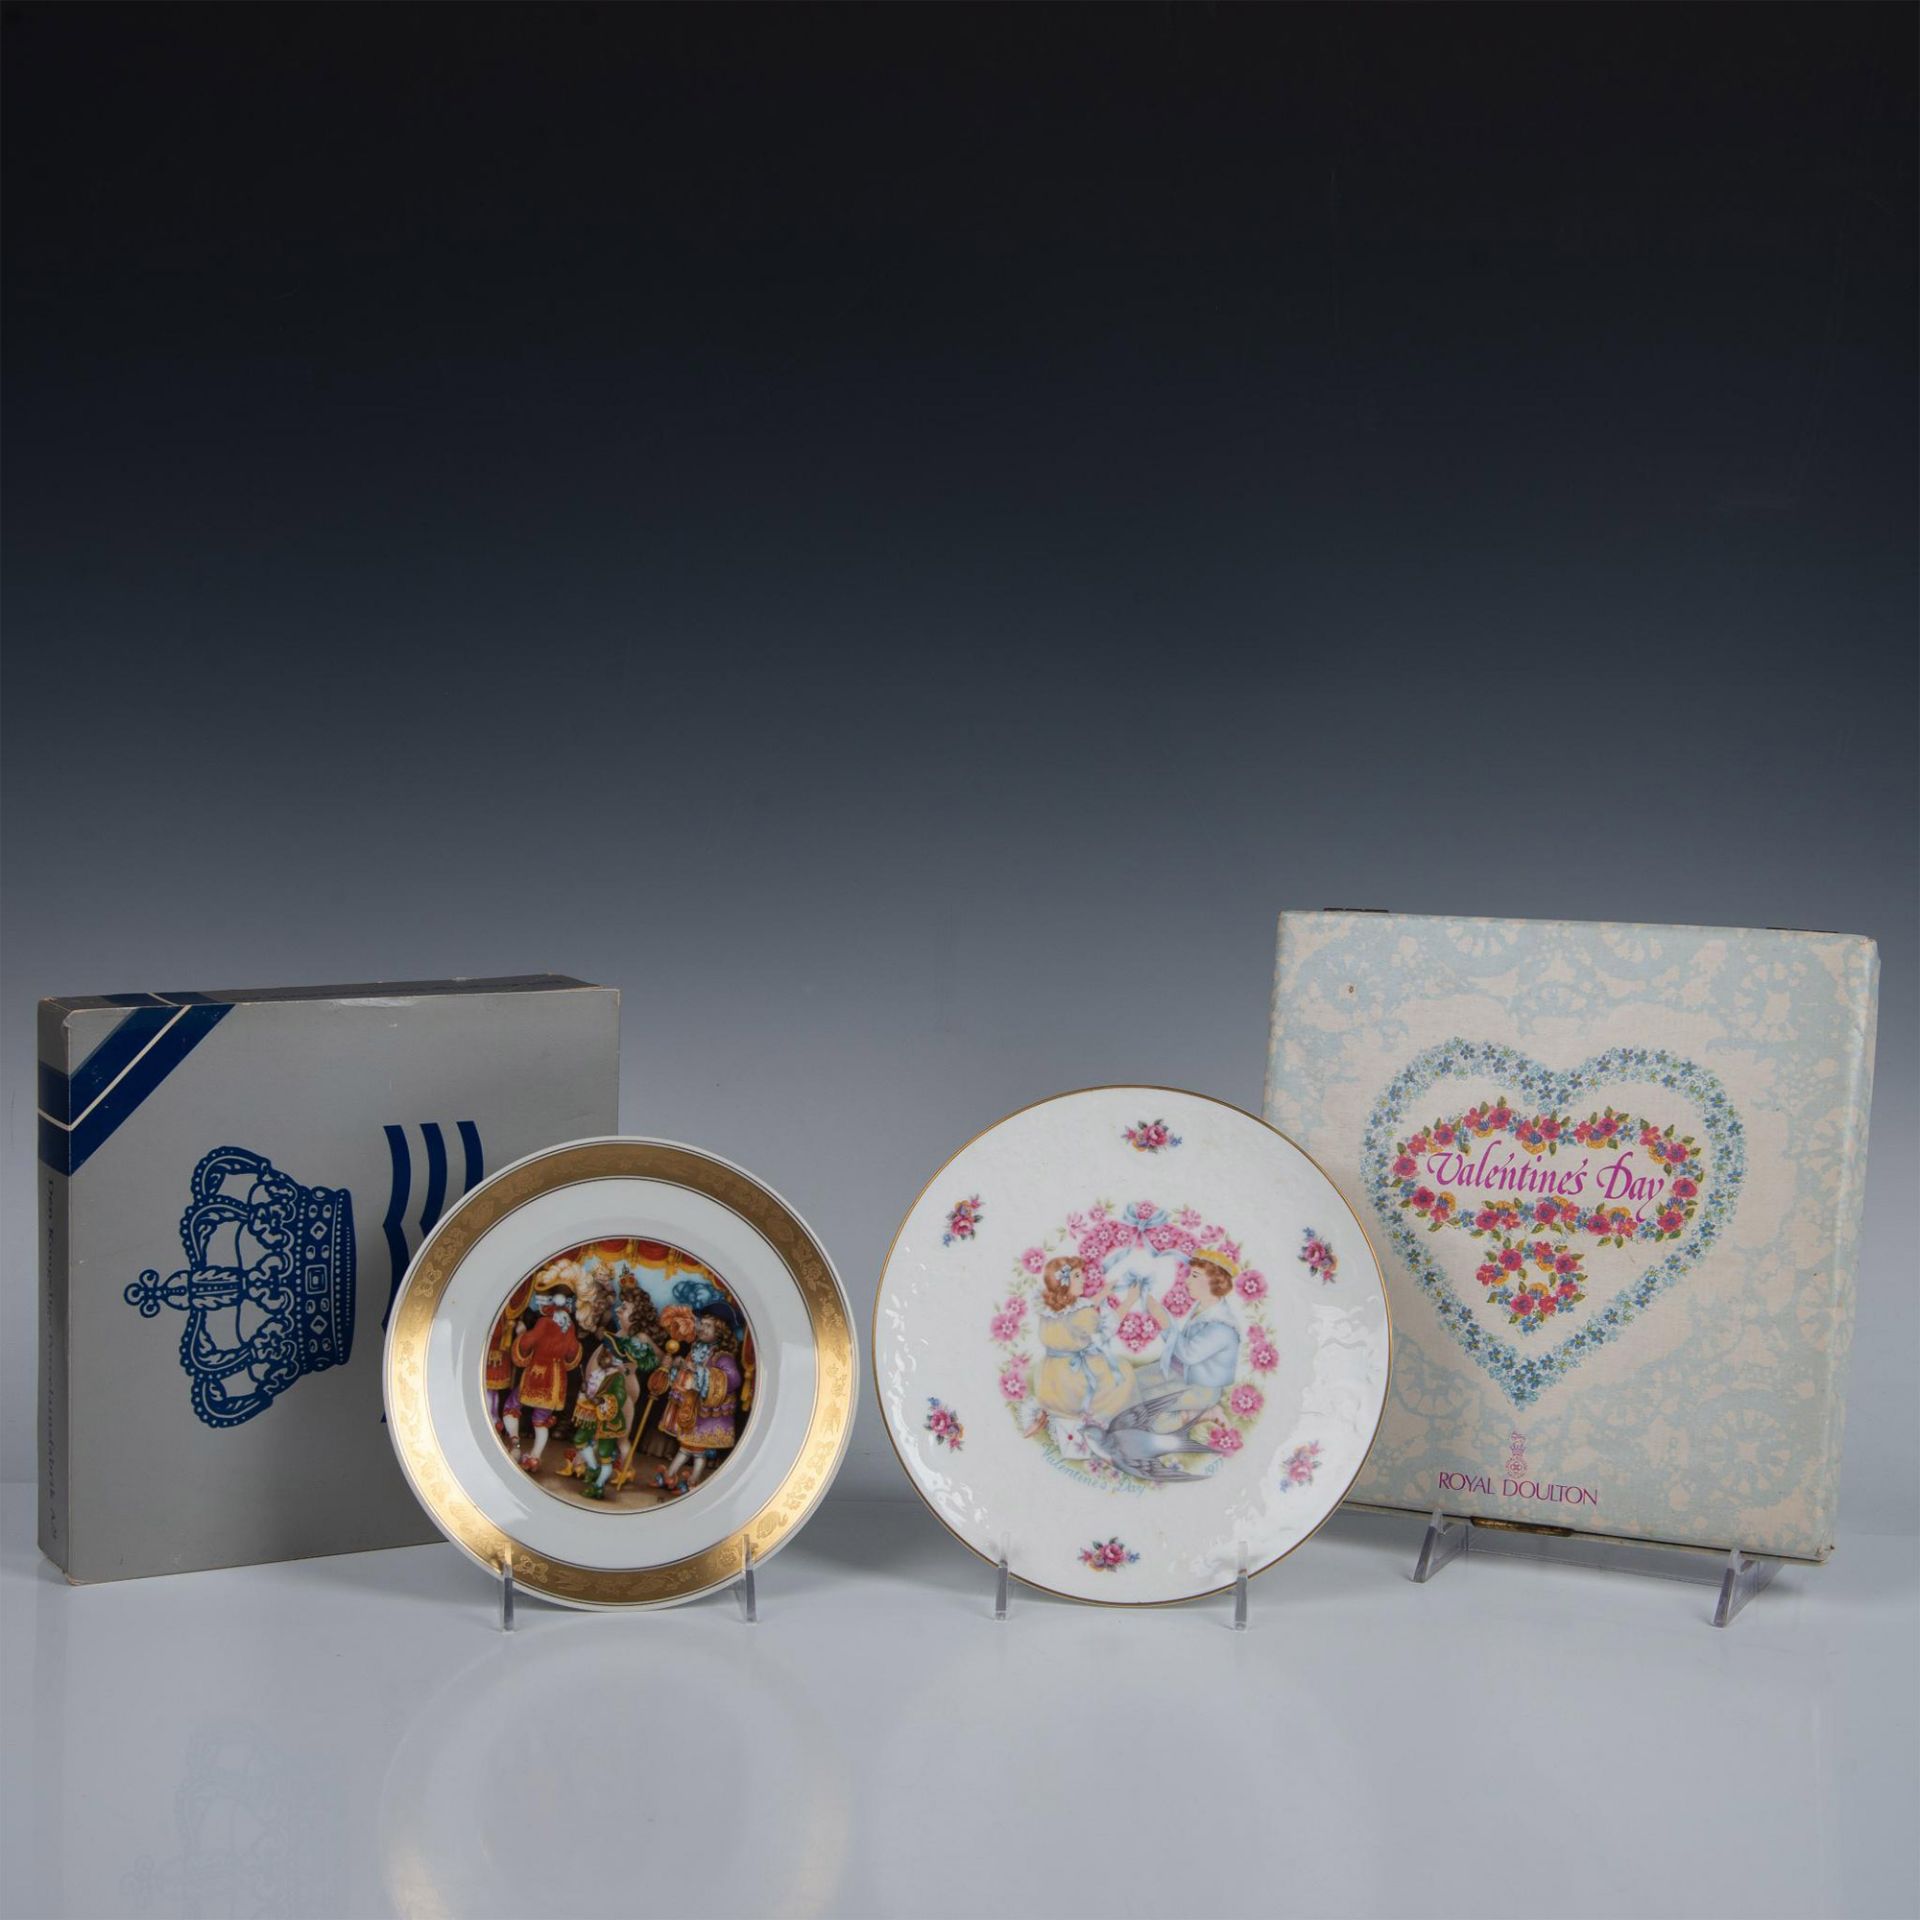 4pc Porcelain Plates, Royal Copenhagen + Royal Doulton - Image 4 of 6